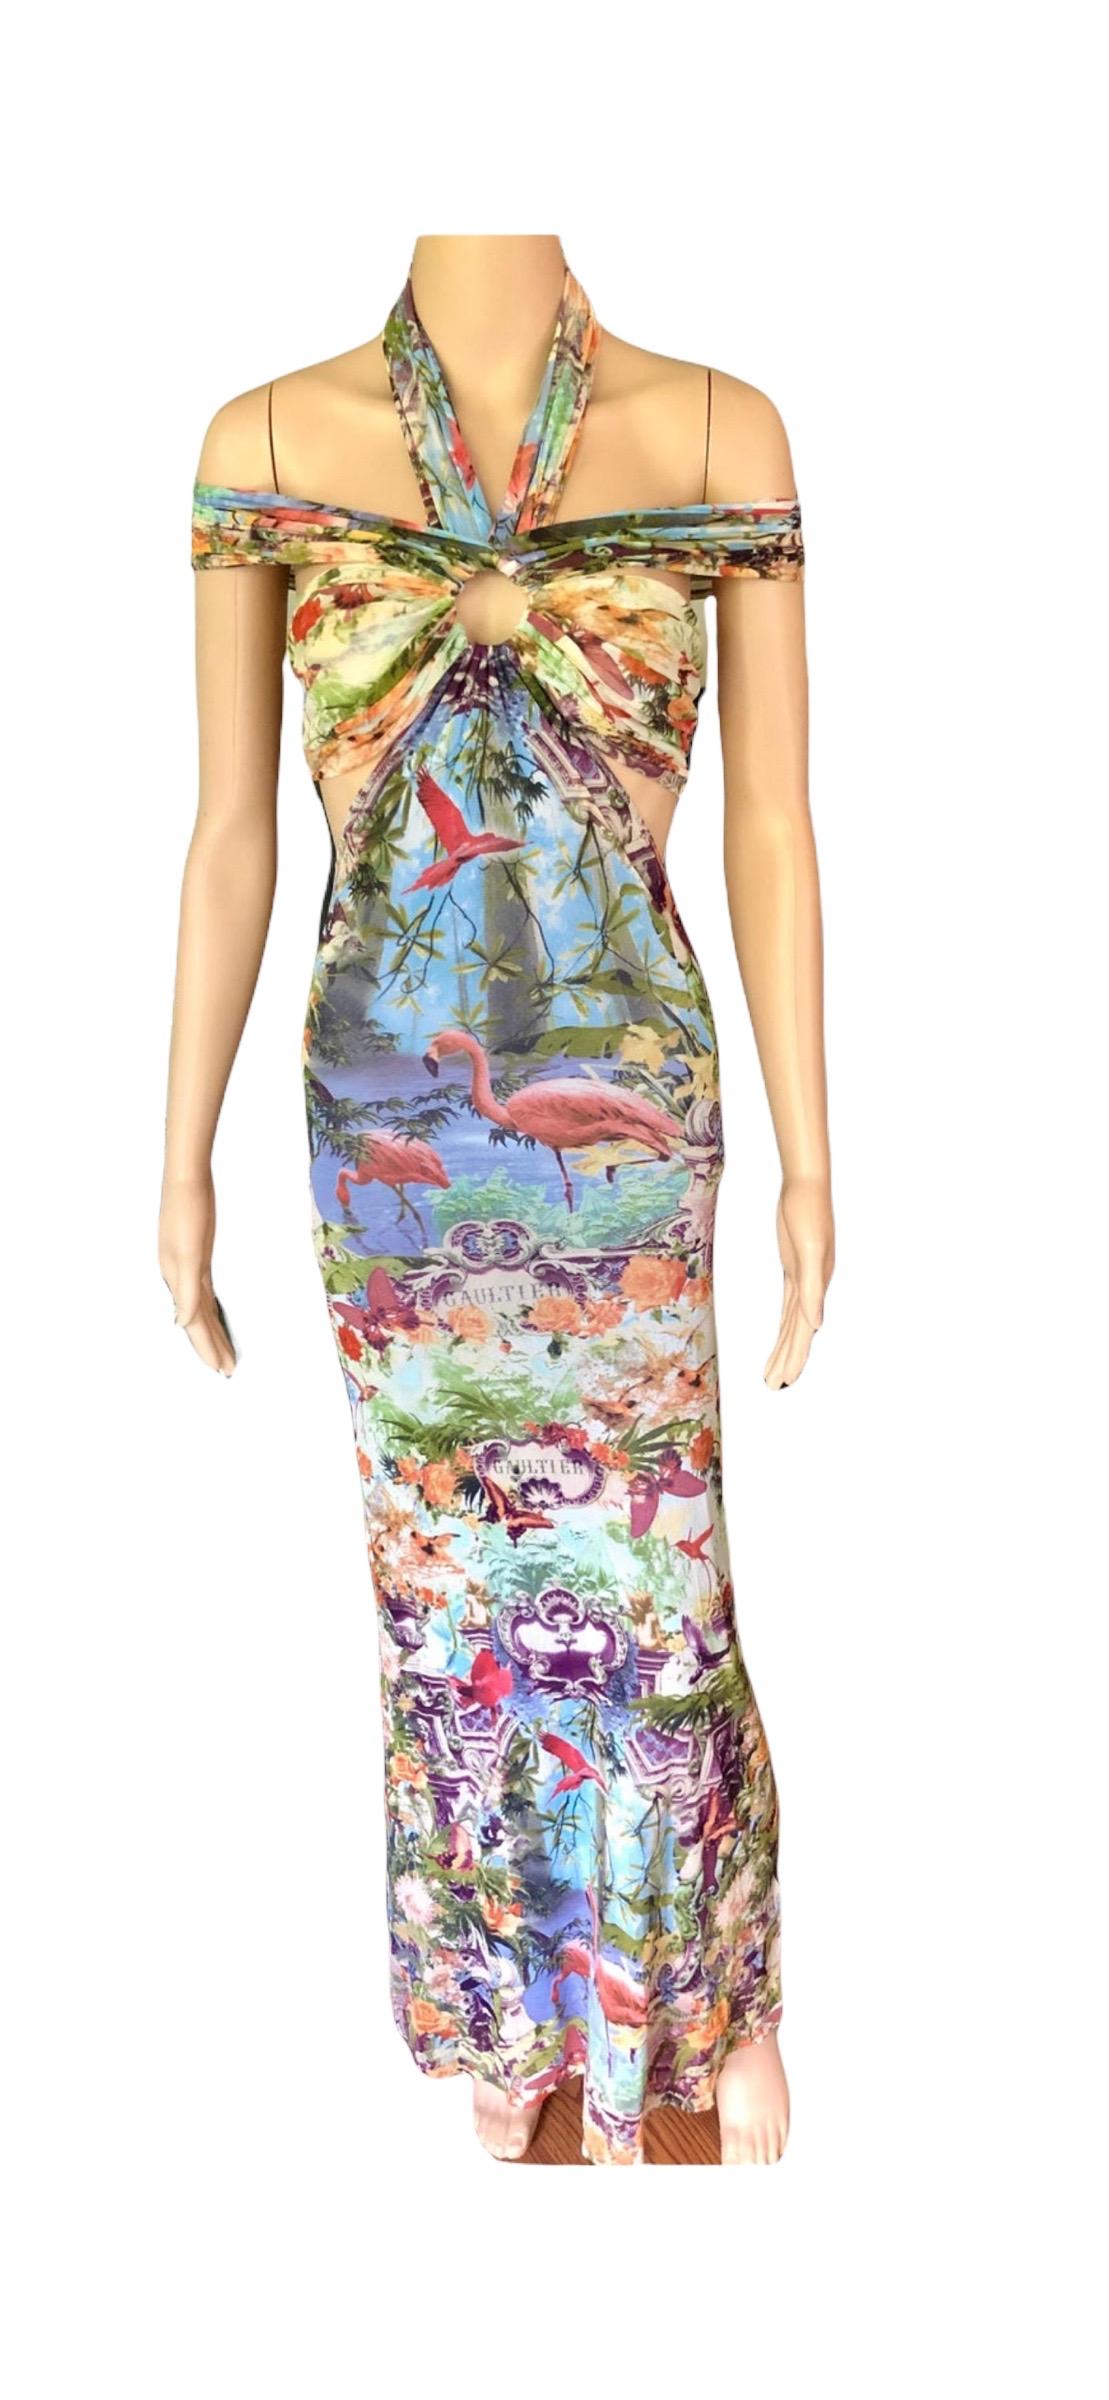 Jean Paul Gaultier Soleil S/S1999 Flamingo Tropical Print Cutout Mesh Maxi Dress For Sale 12